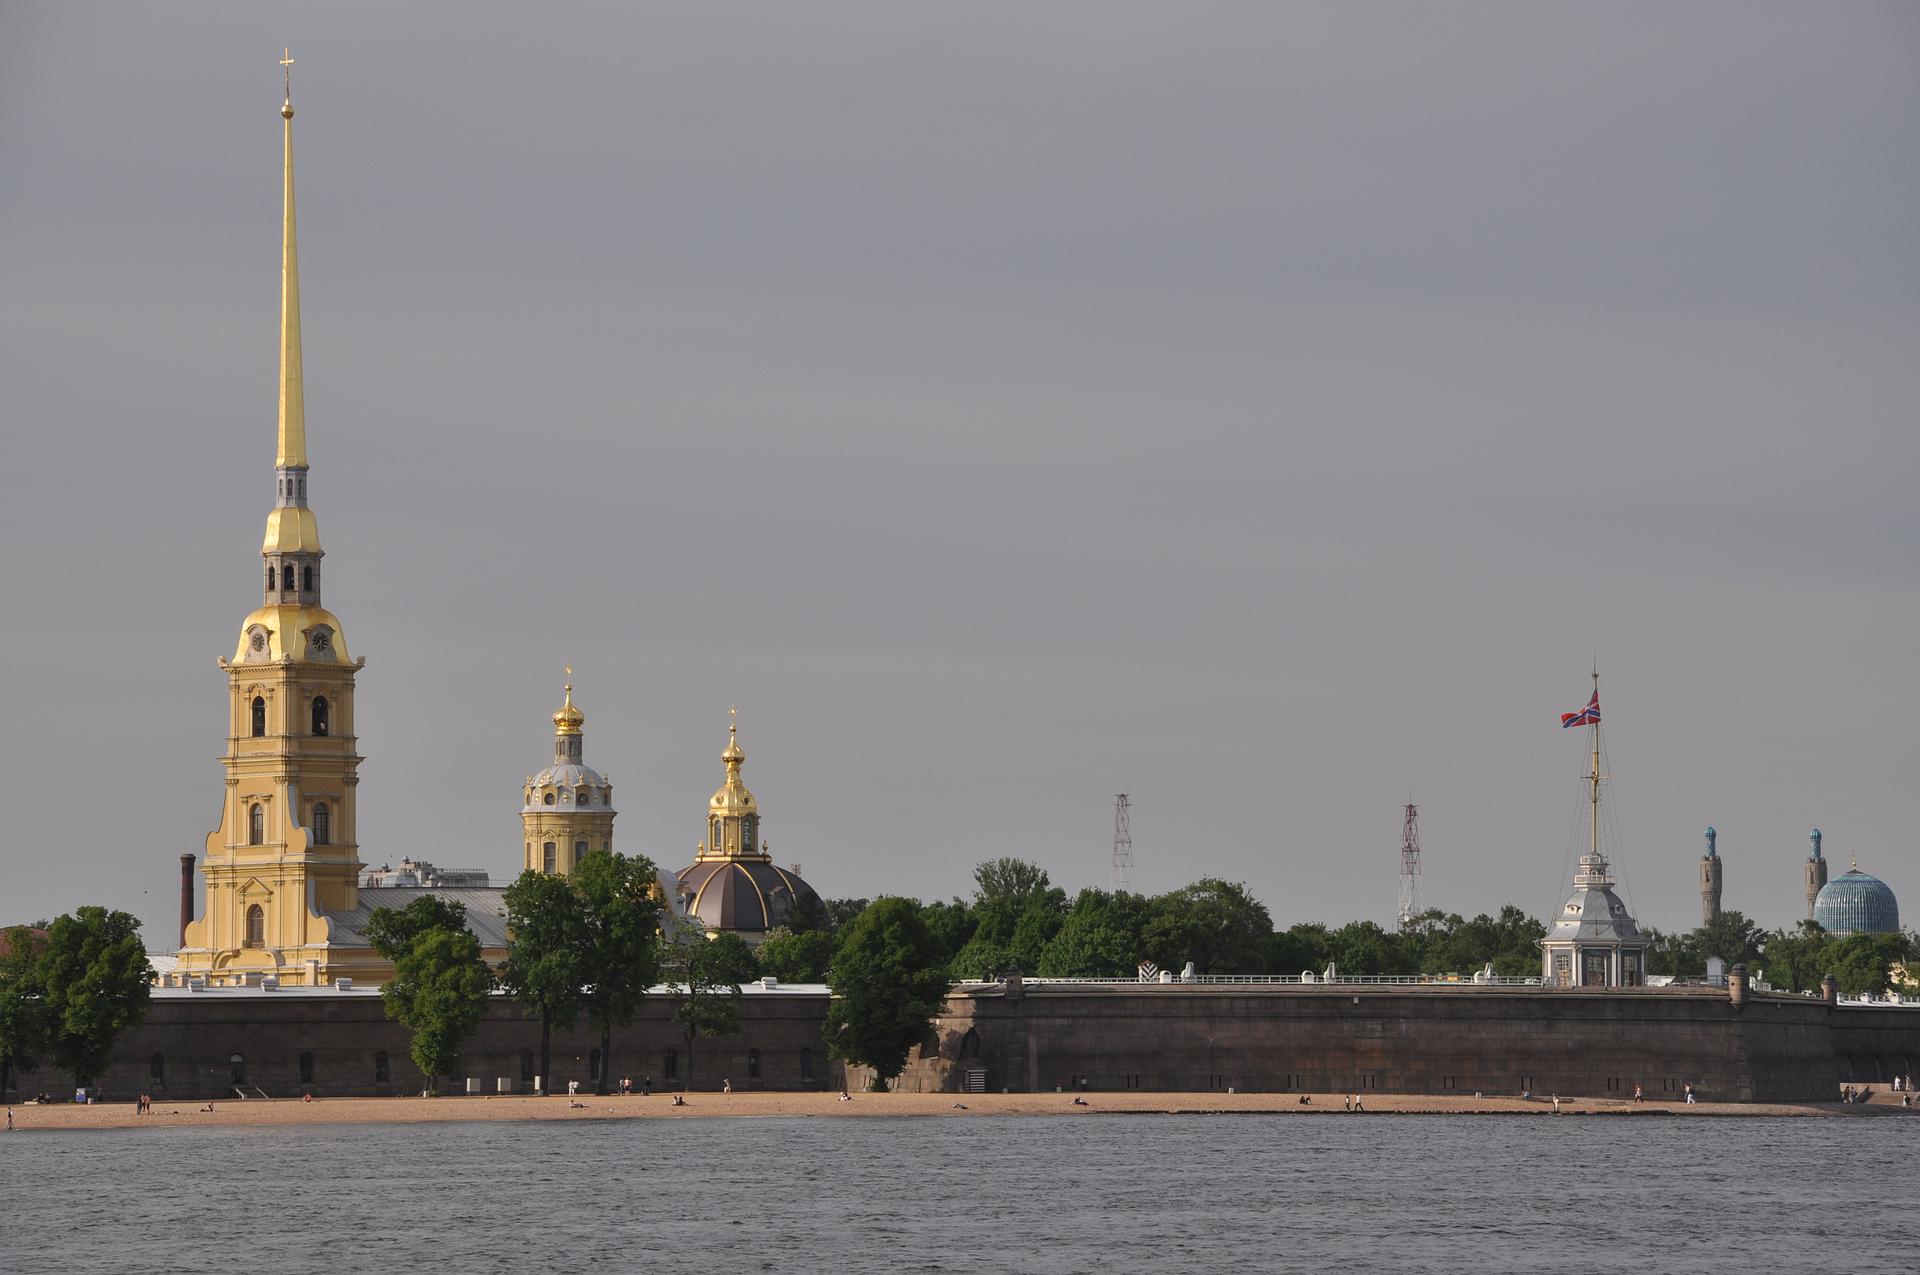 Экскурсия в Петропавловскую крепость (собор+тюрьма) + Кунсткамера (ГРУППОВАЯ)